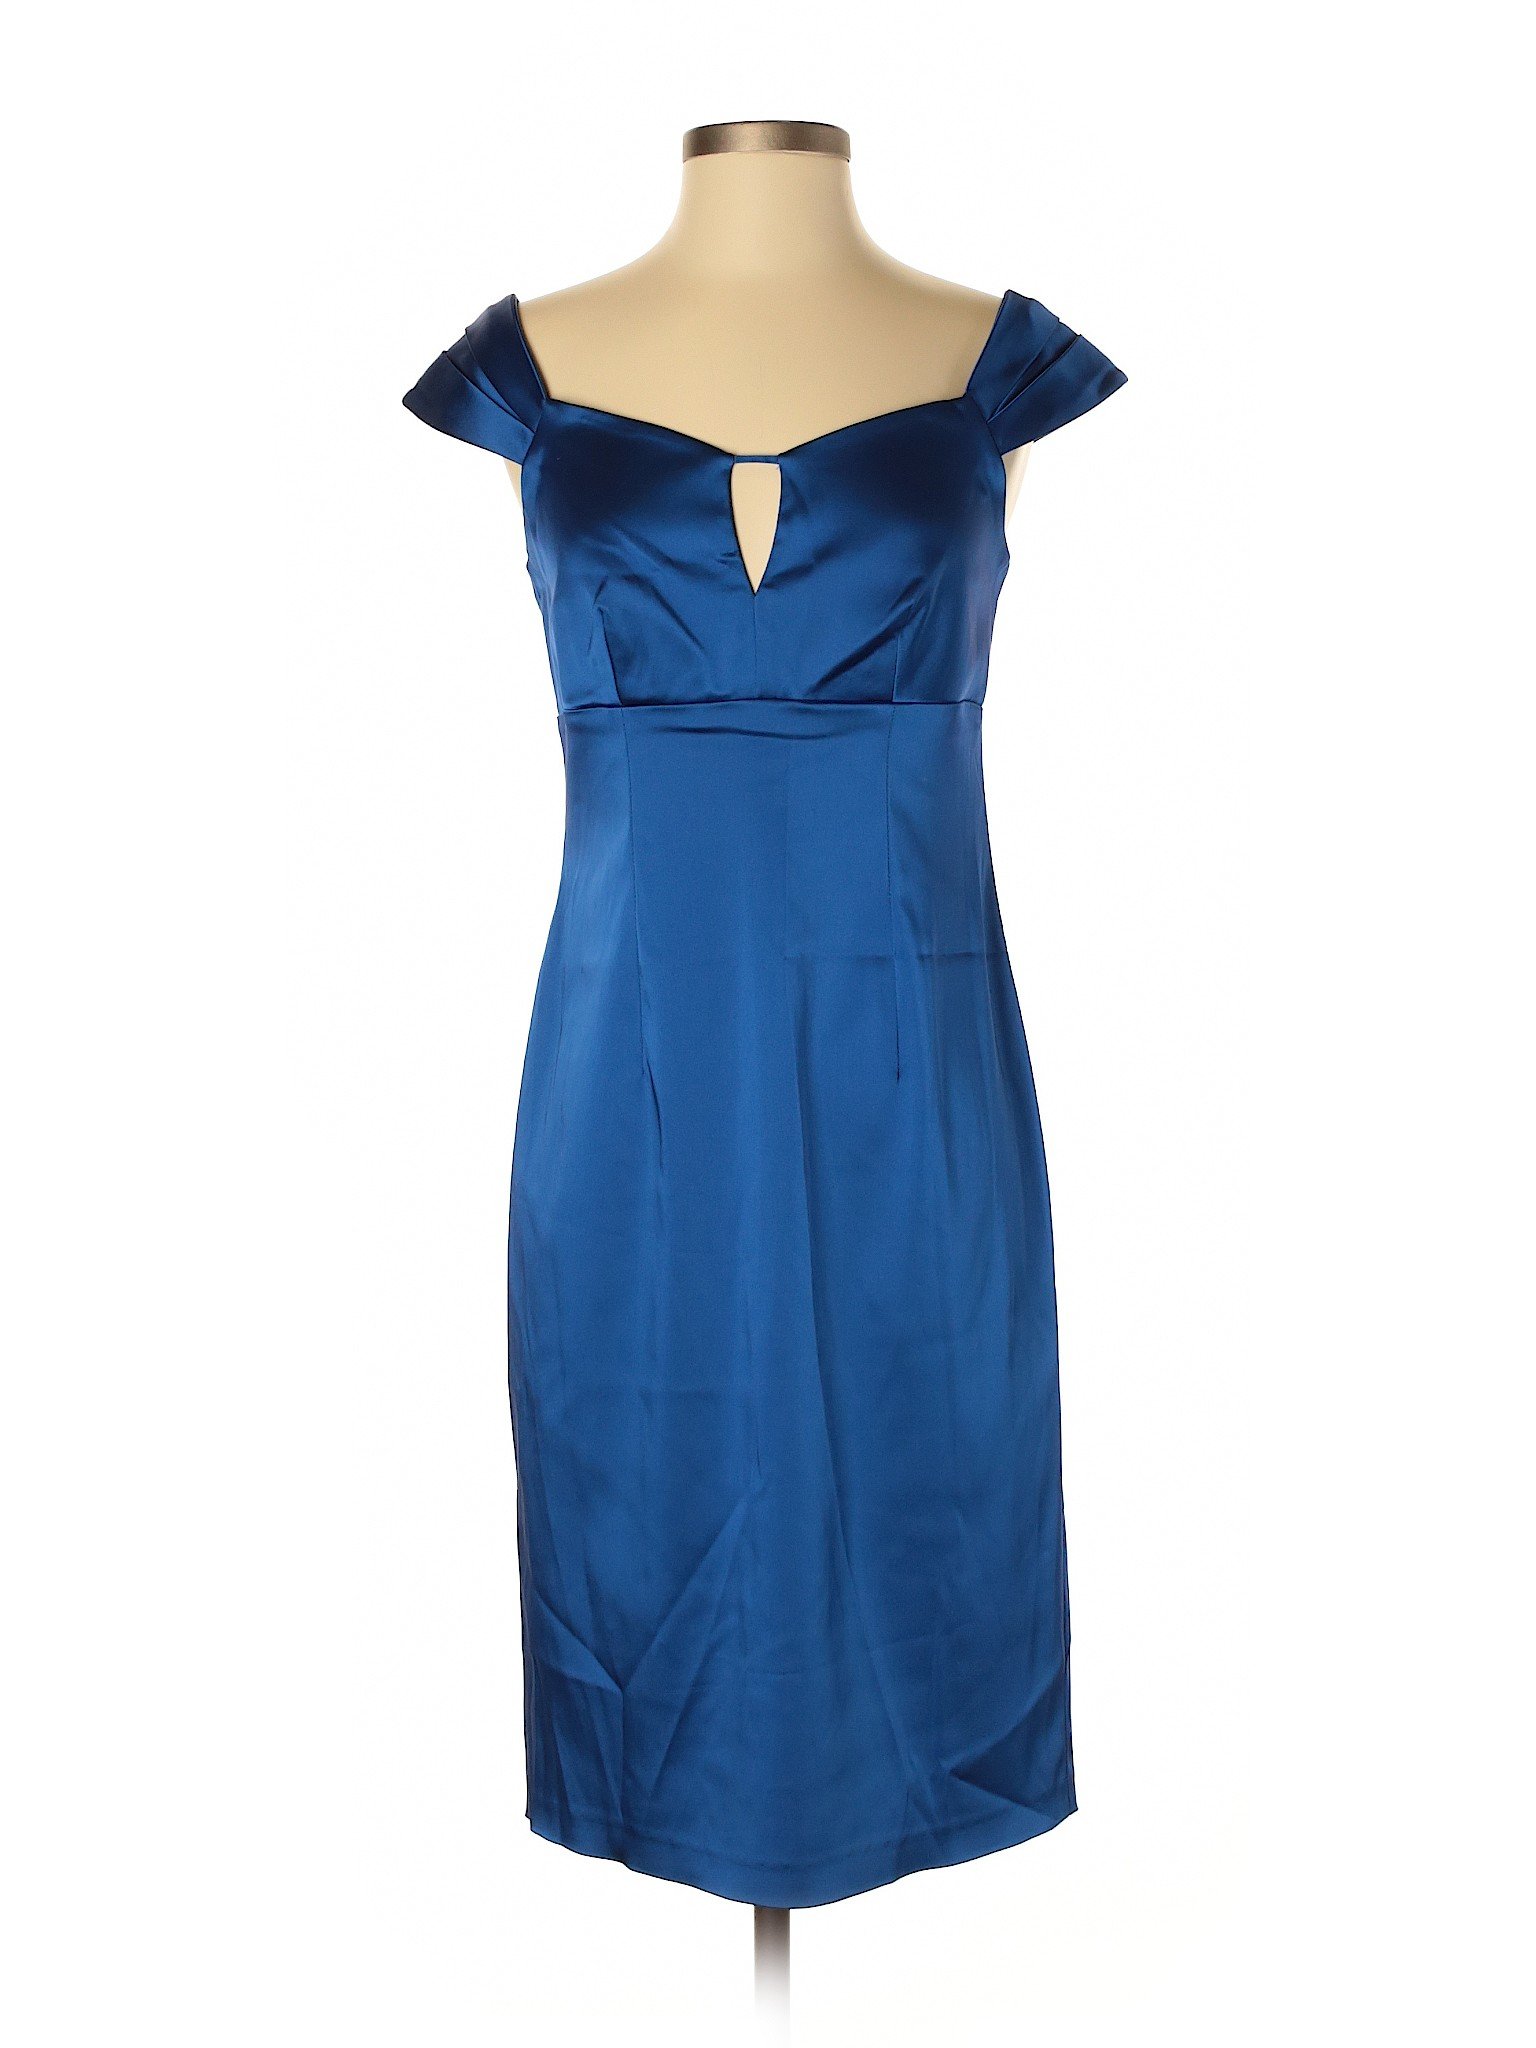 Calvin Klein Women Blue Cocktail Dress 4 | eBay